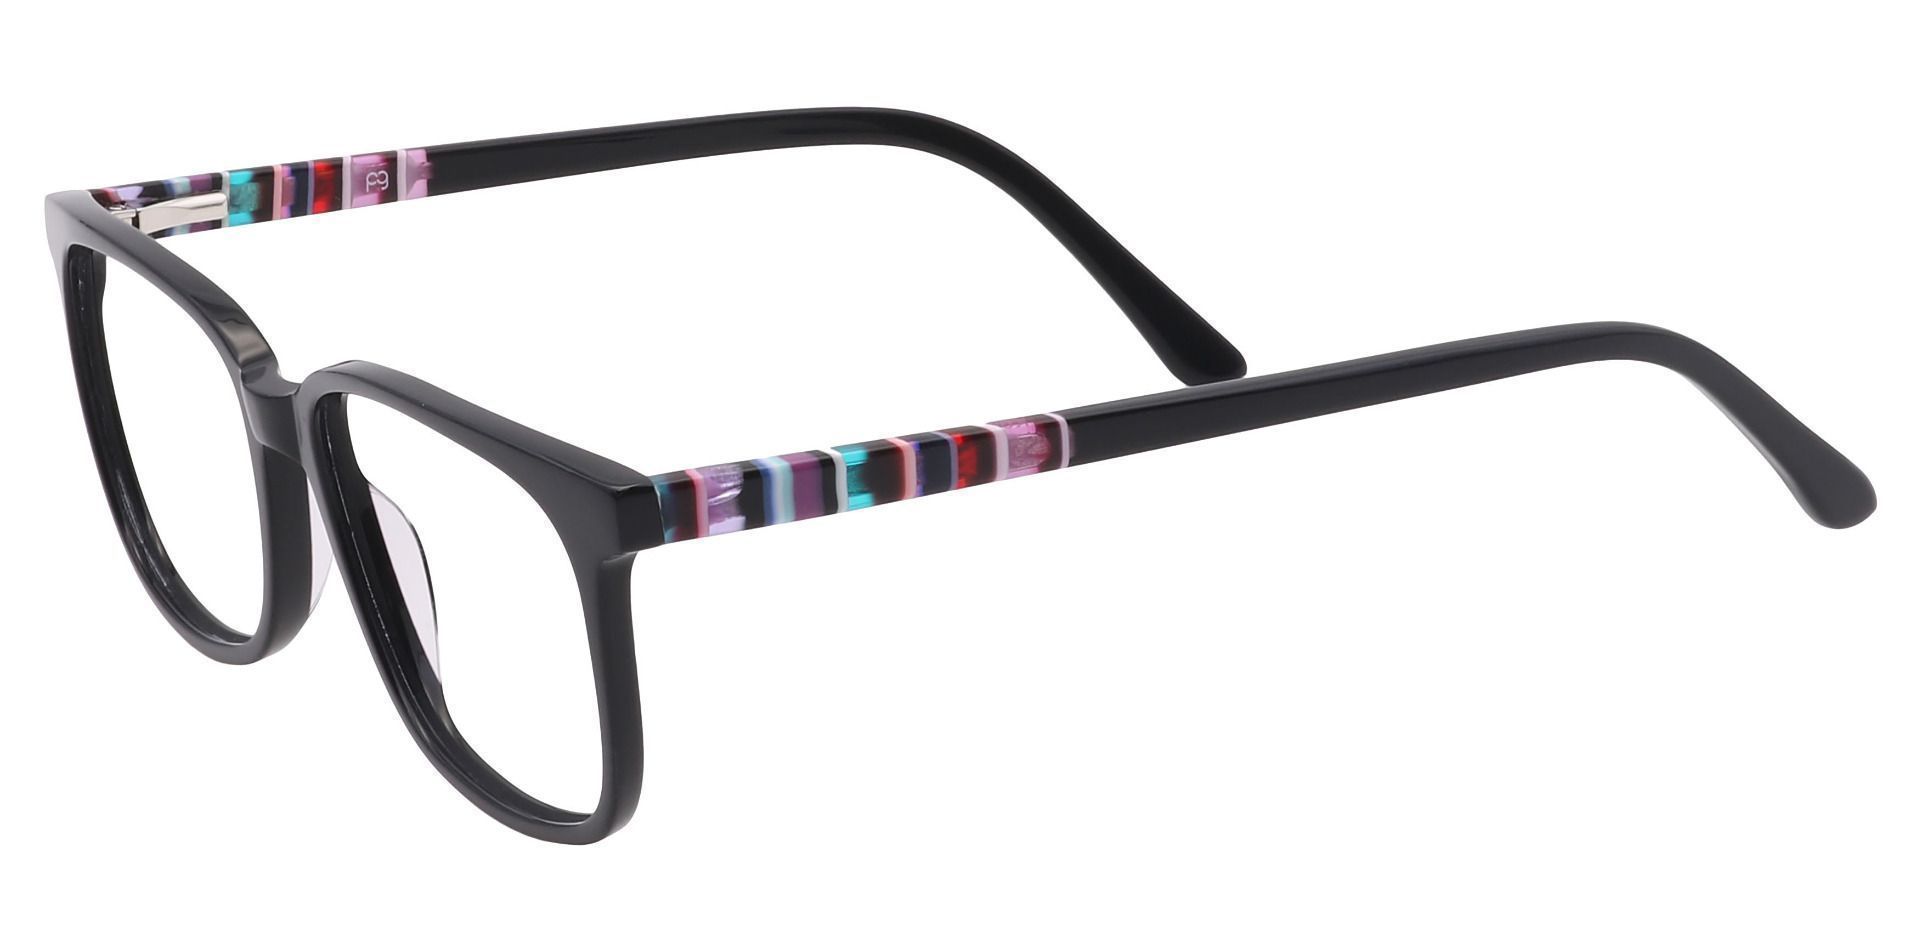 Fern Square Progressive Glasses - Black